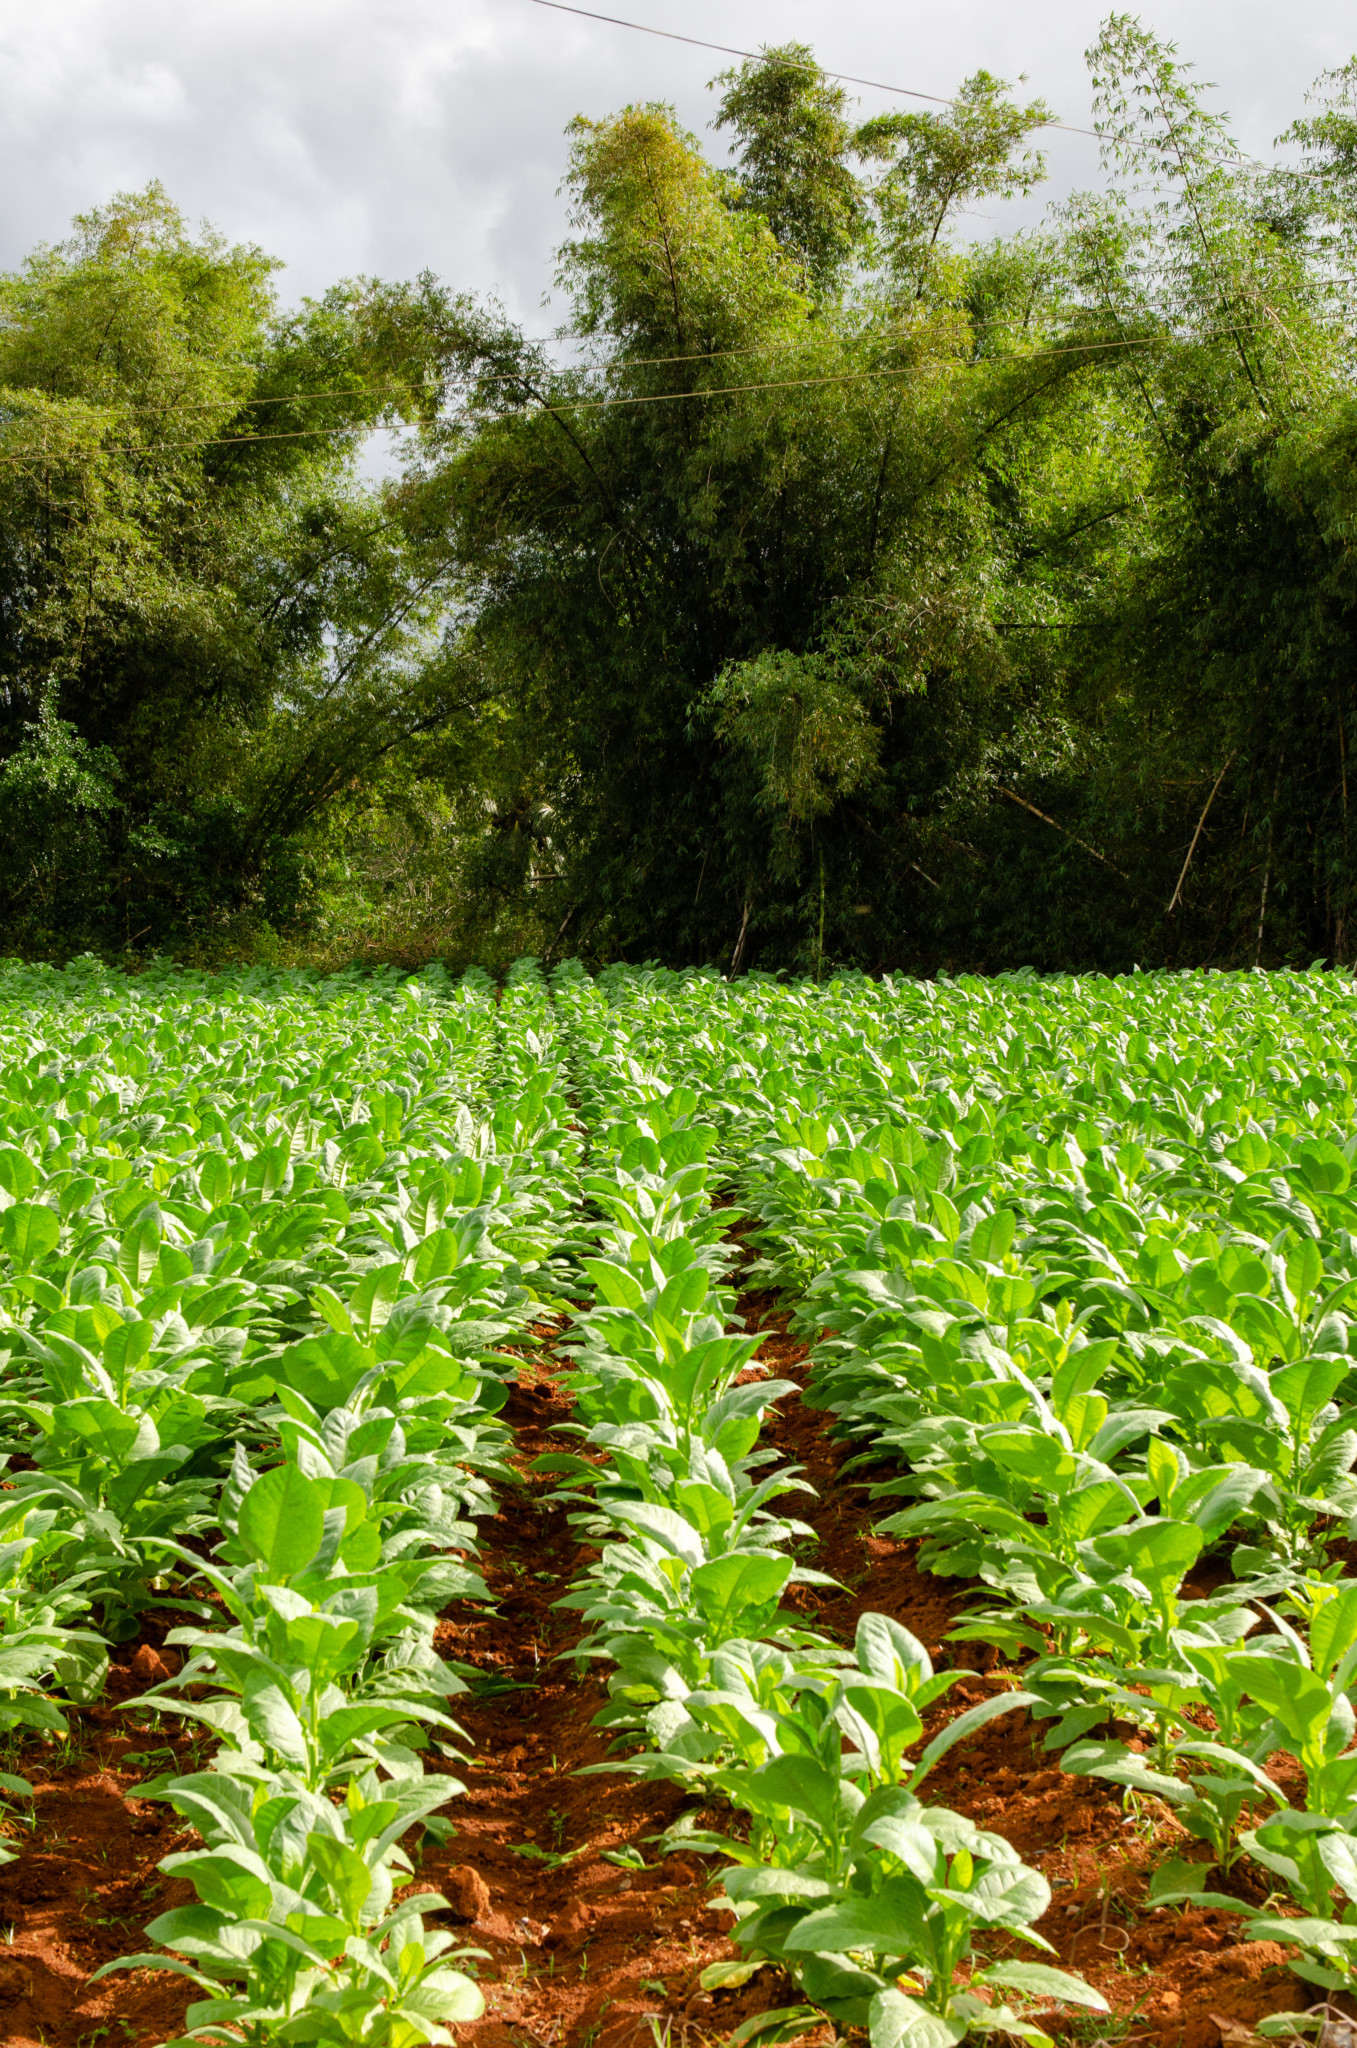 Tabakfelder in Pinar del Rio in kann man ganz einfach besuchen